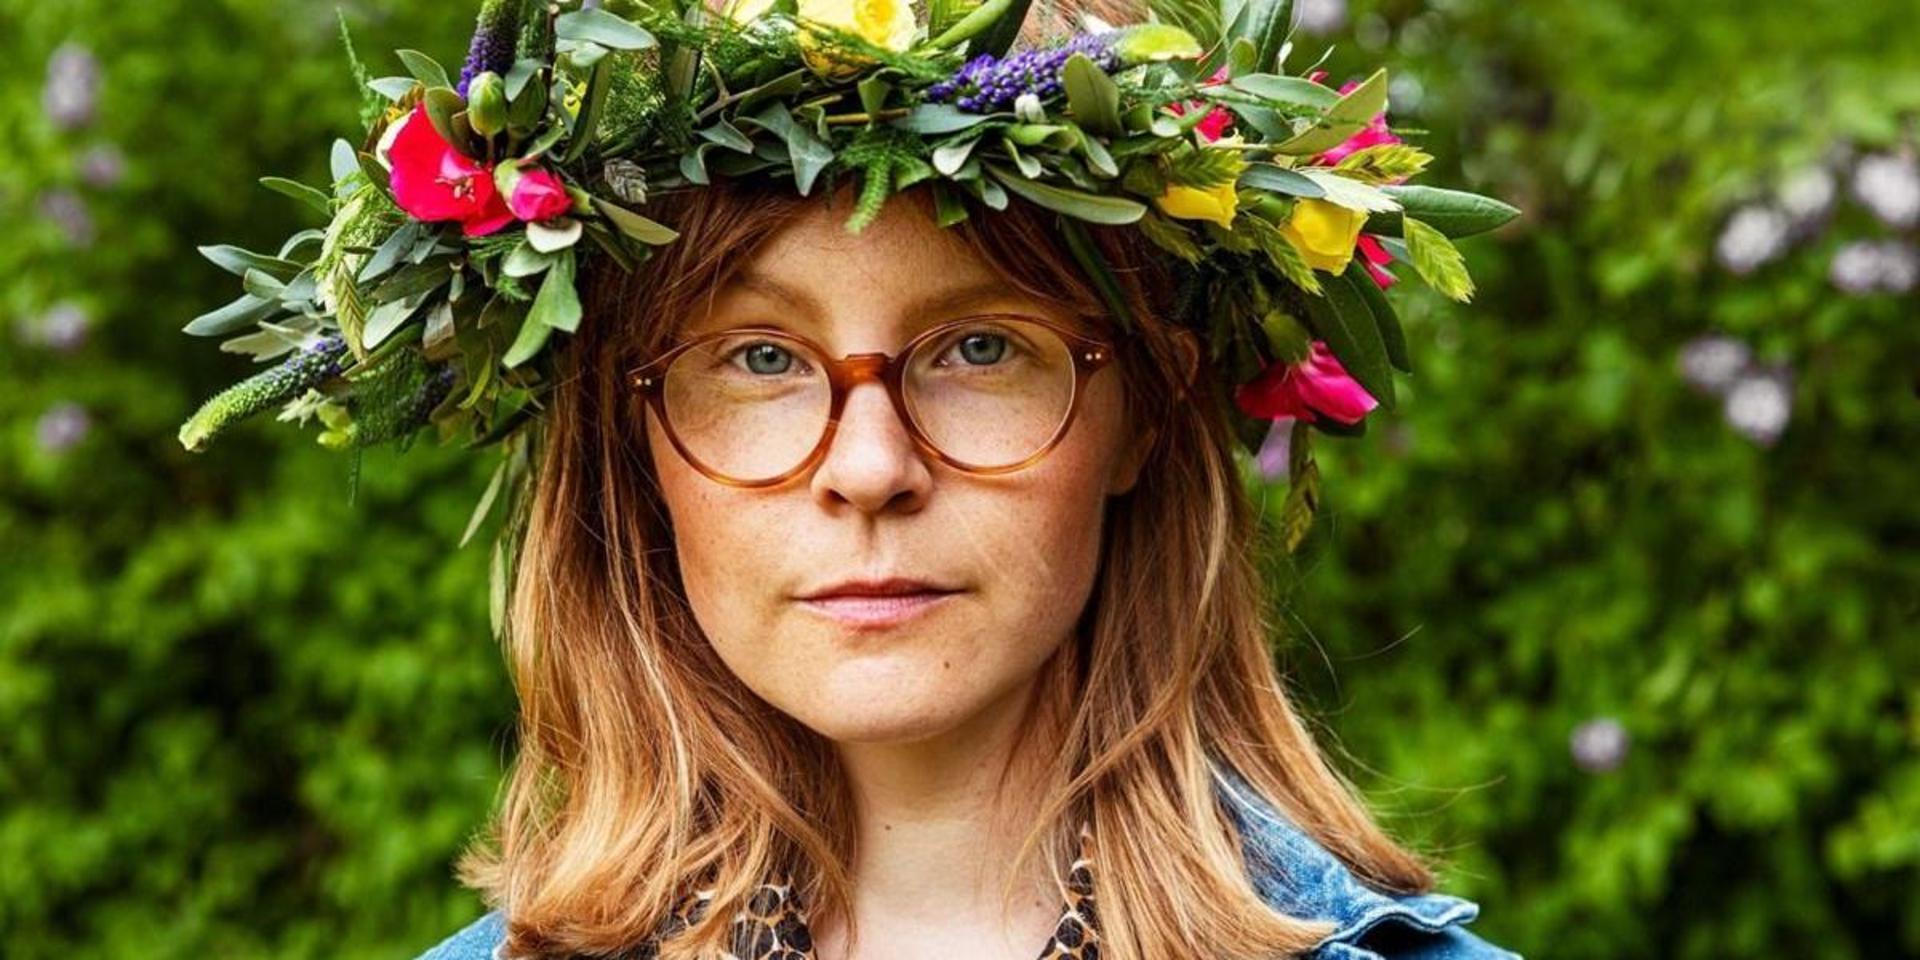 Emma AdBåge debuterar som sommarvärd. Låtarna är väl valda och budskapet skarpt: vuxna borde inte förminska barn och begränsa deras frihet.